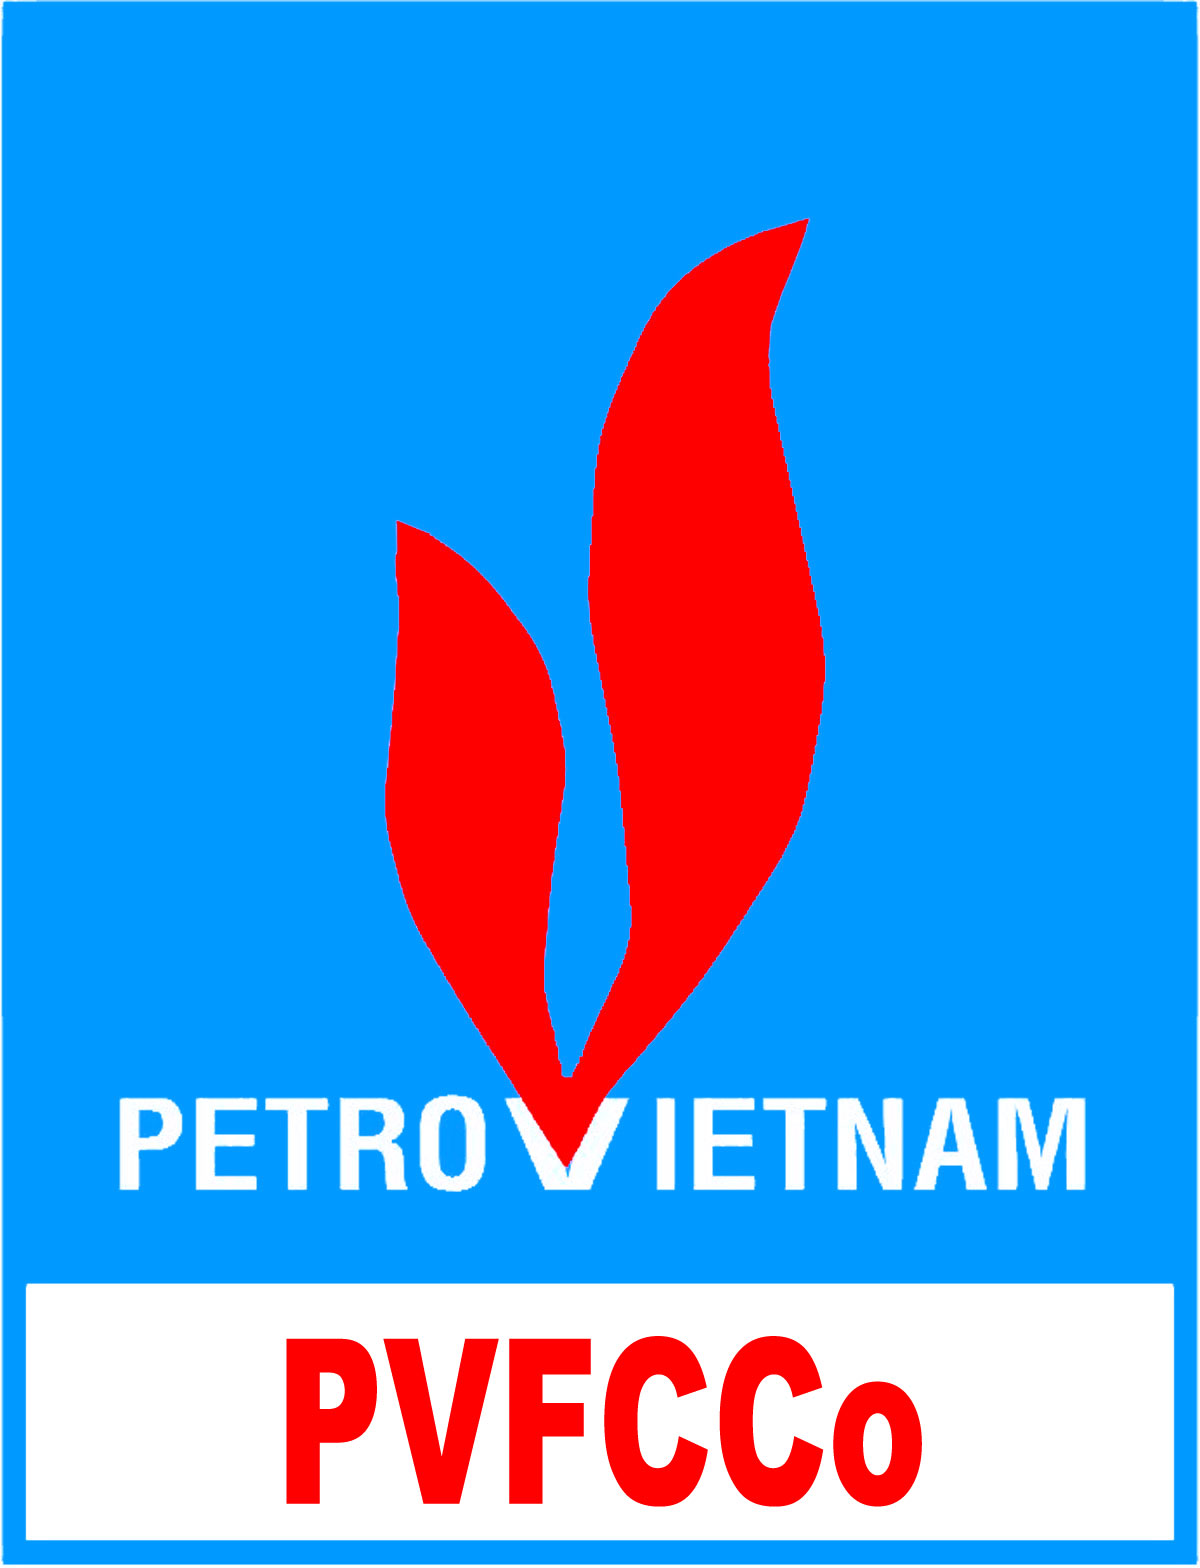 Bizimgaz vector logo